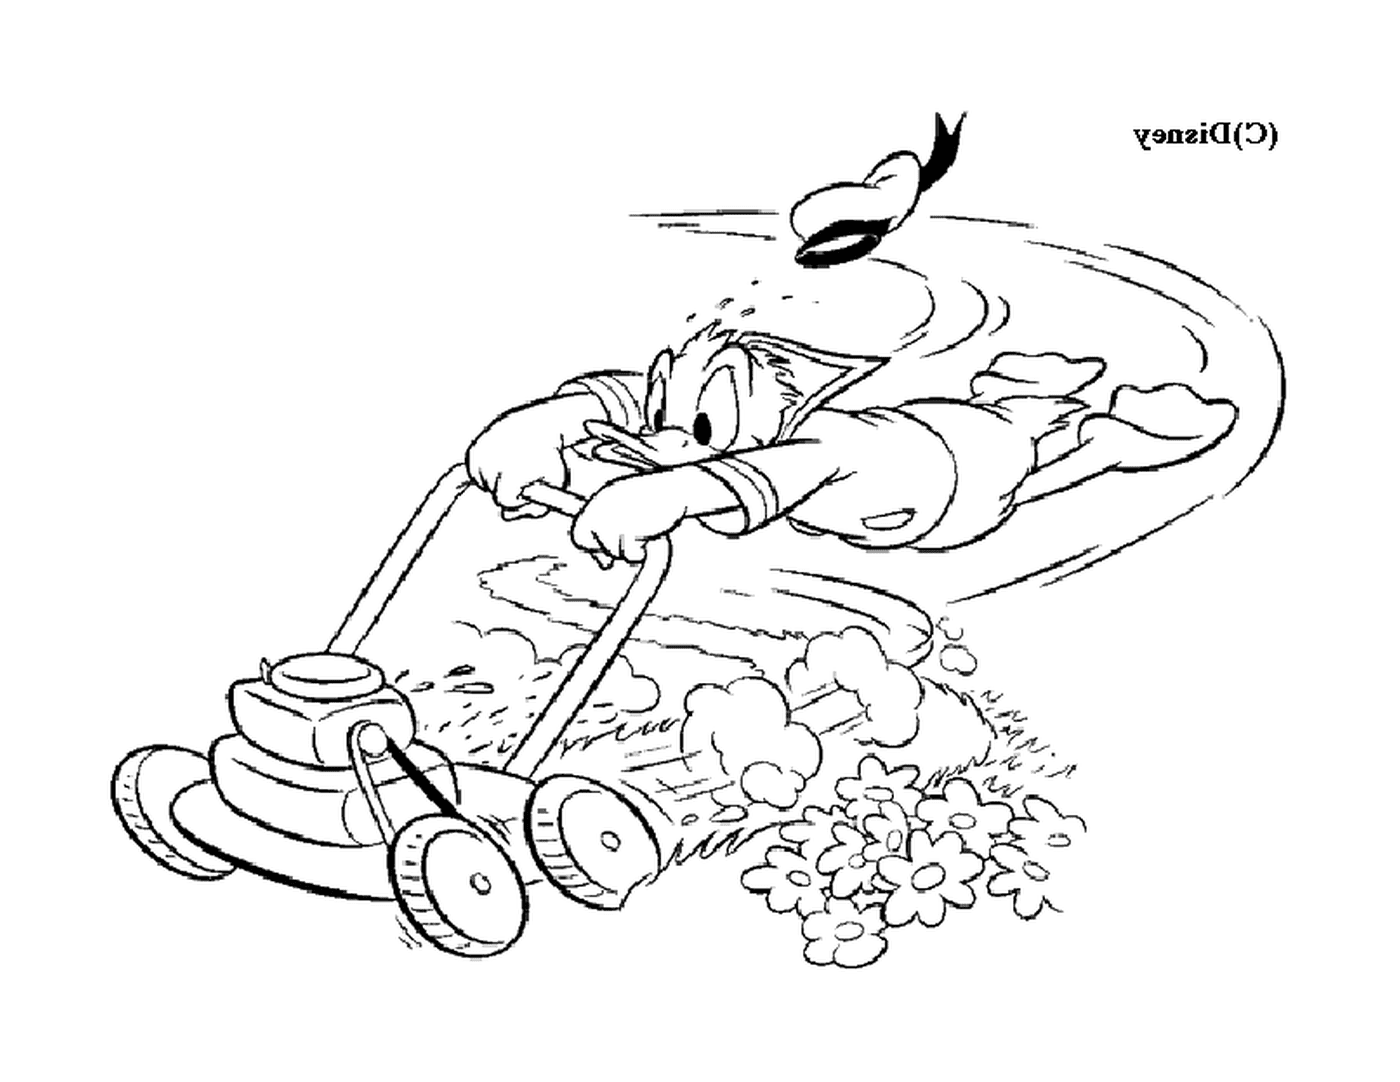   Donald tonde la pelouse avec zèle 